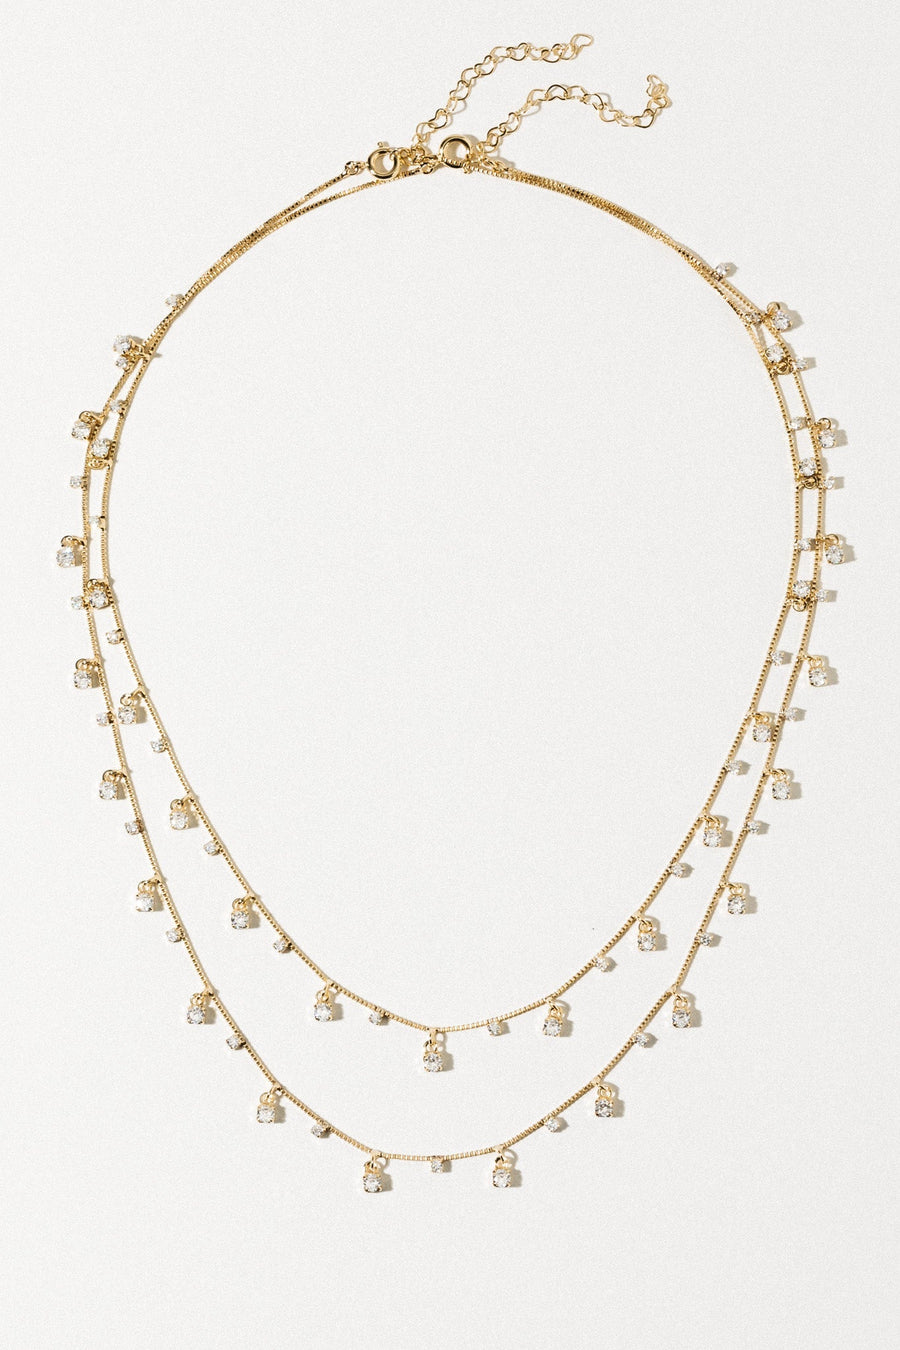 Dona Italia Jewelry StarDust CZ Necklace